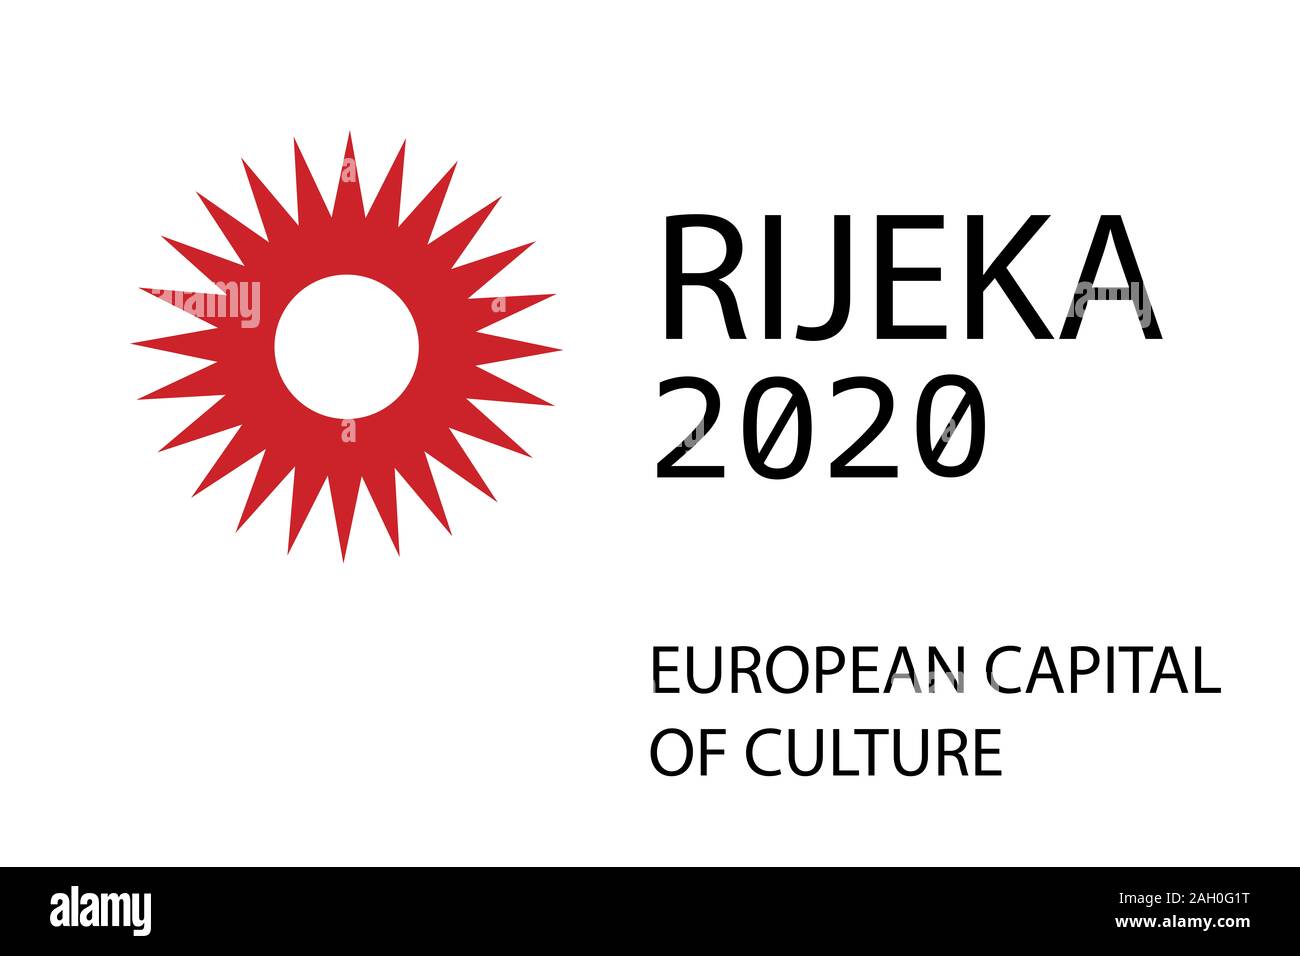 Rijeka, Croatie - ville est capitale européenne de la Culture en 2020. Design pour la bannière, t-shirt graphiques, de motifs en vogue, slogan tees, autocollants, cartes Banque D'Images